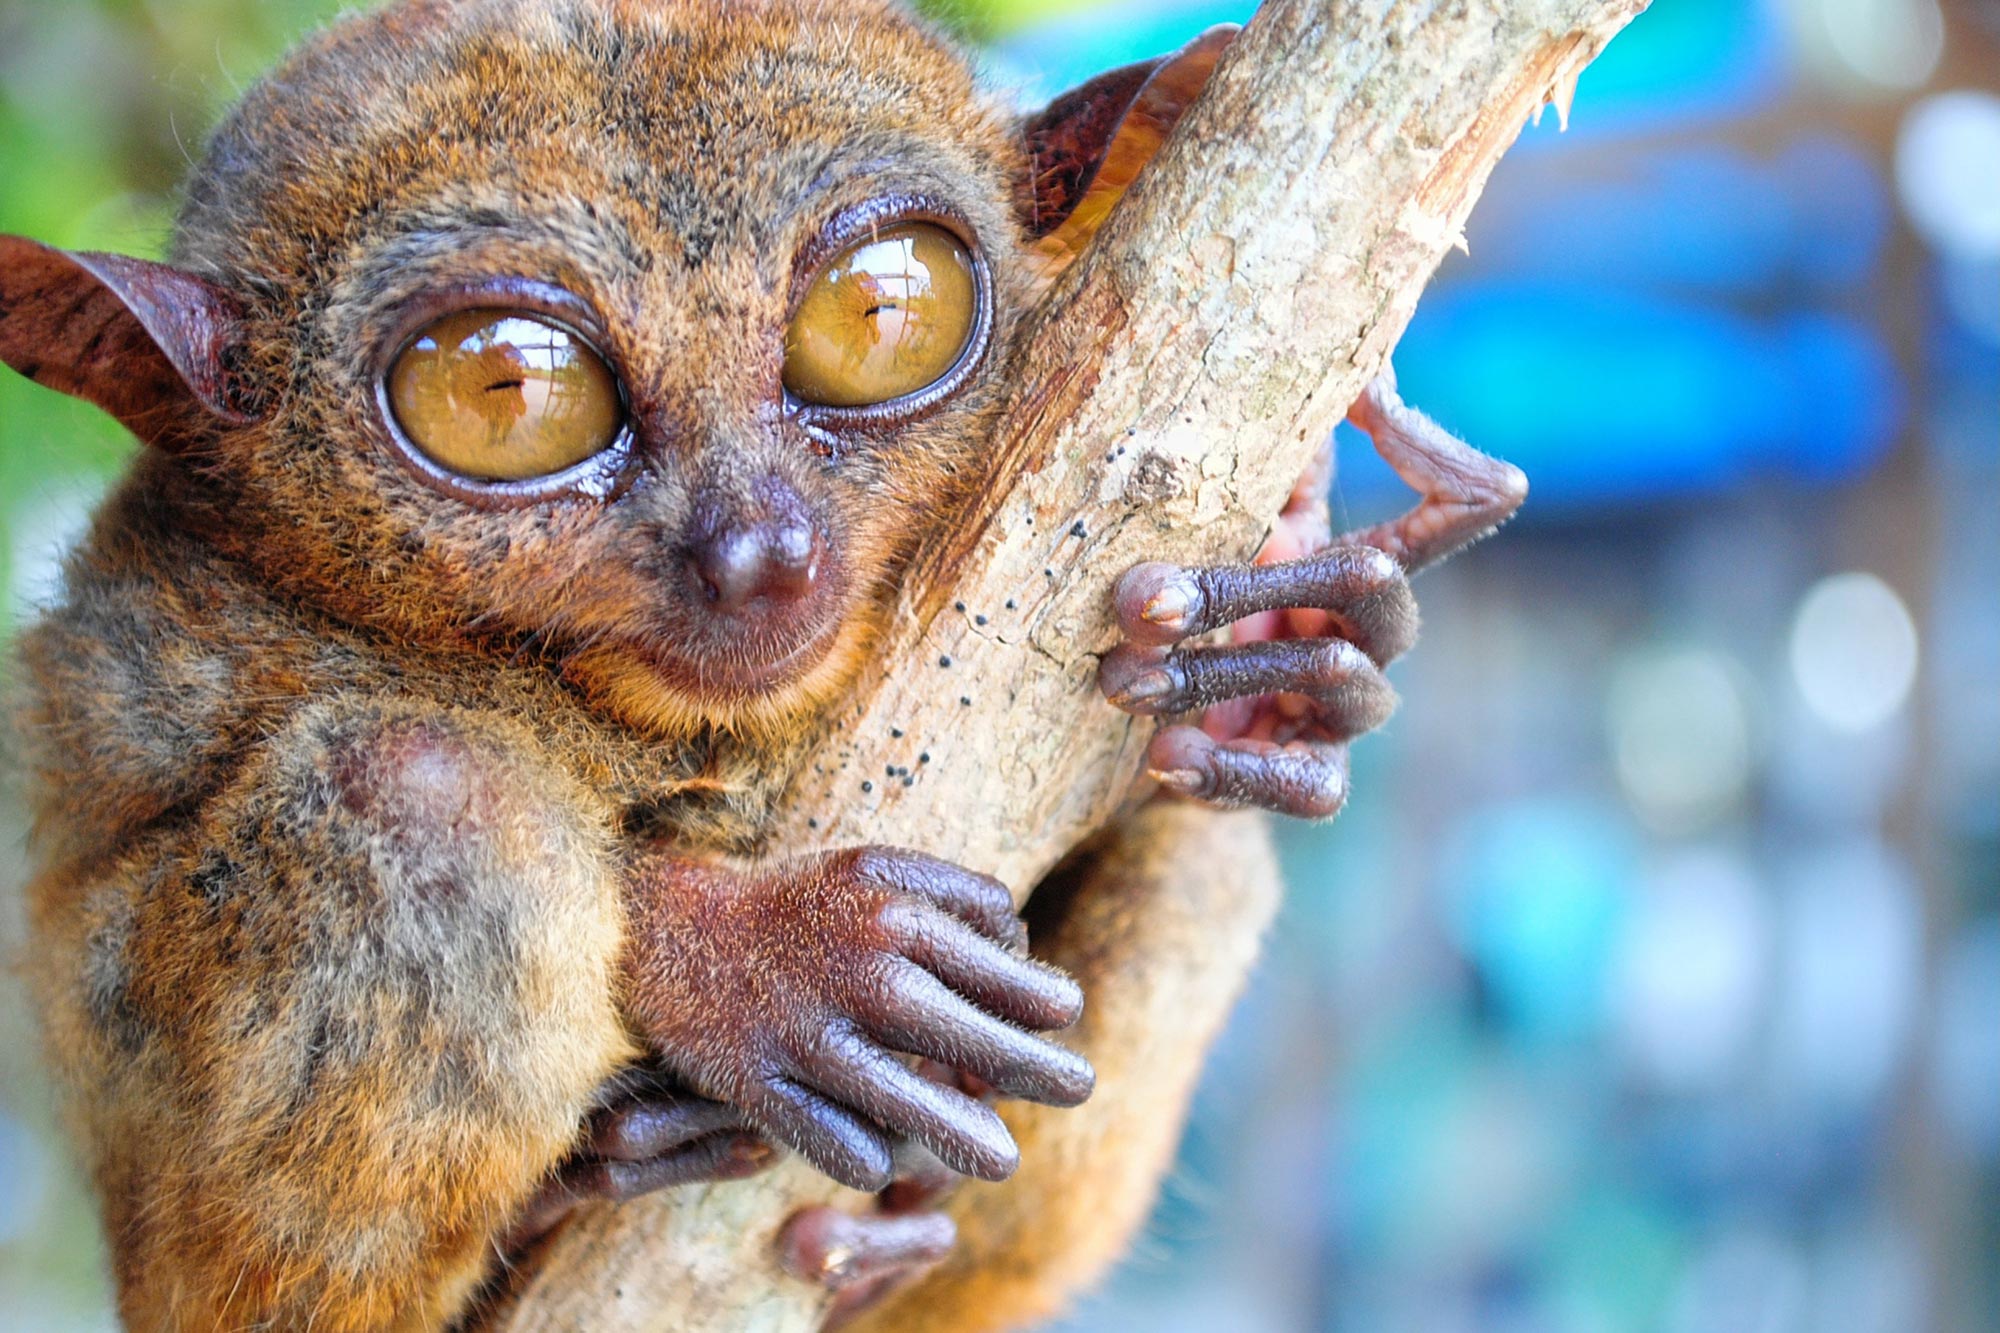 El árbol genealógico de primates más grande jamás creado, que incluye especies vivas y extintas